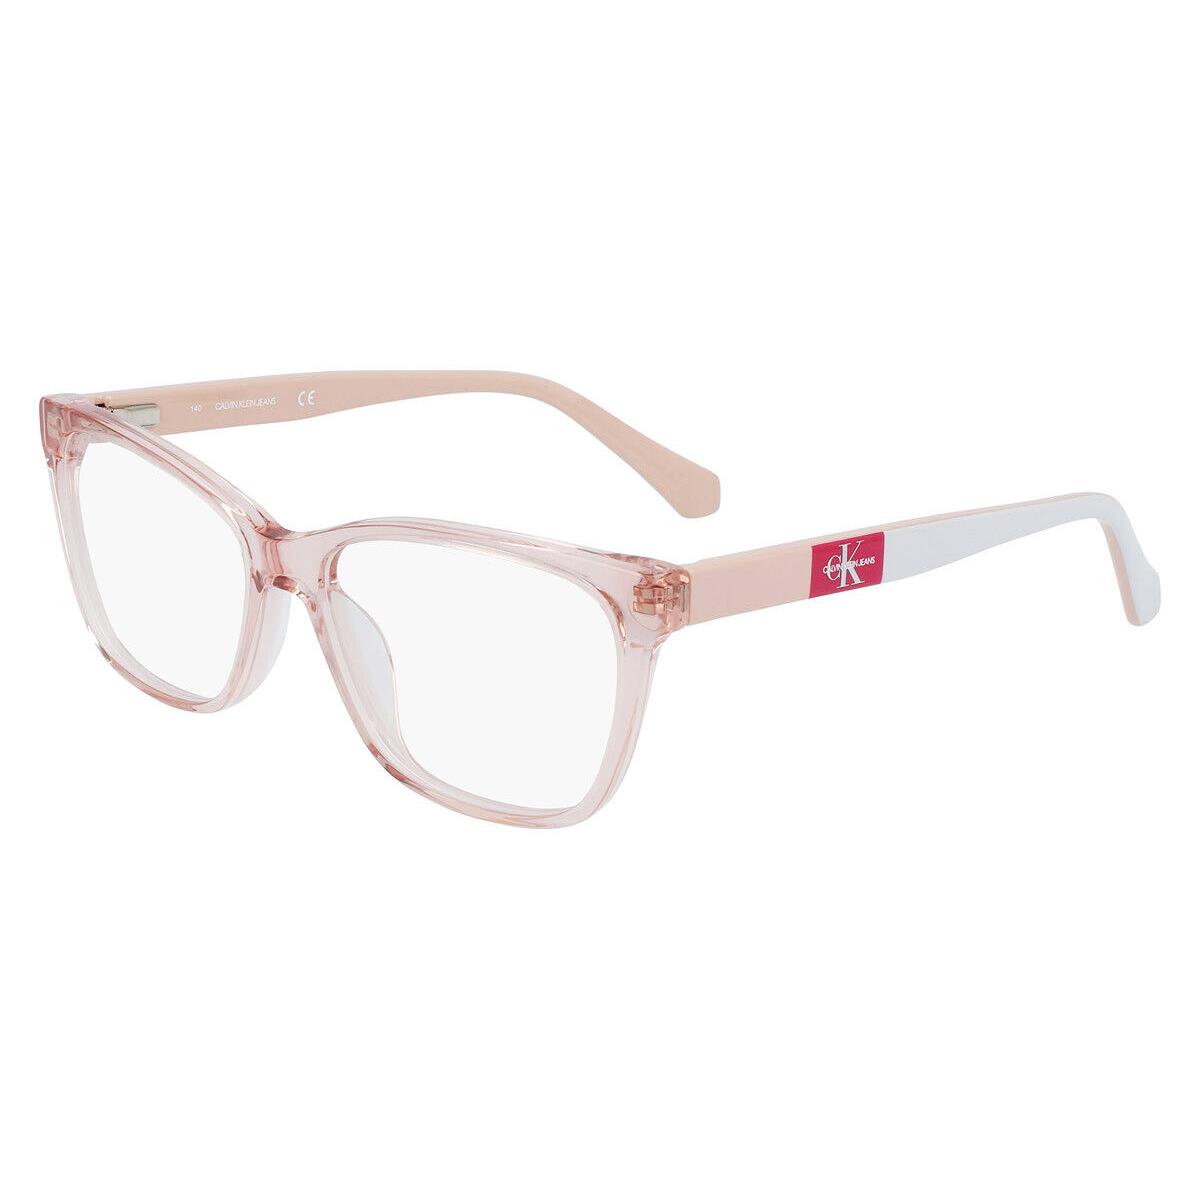 Calvin Klein CKJ21621 Eyeglasses Women Light Pink Square 54mm - Frame: Light Pink, Lens: